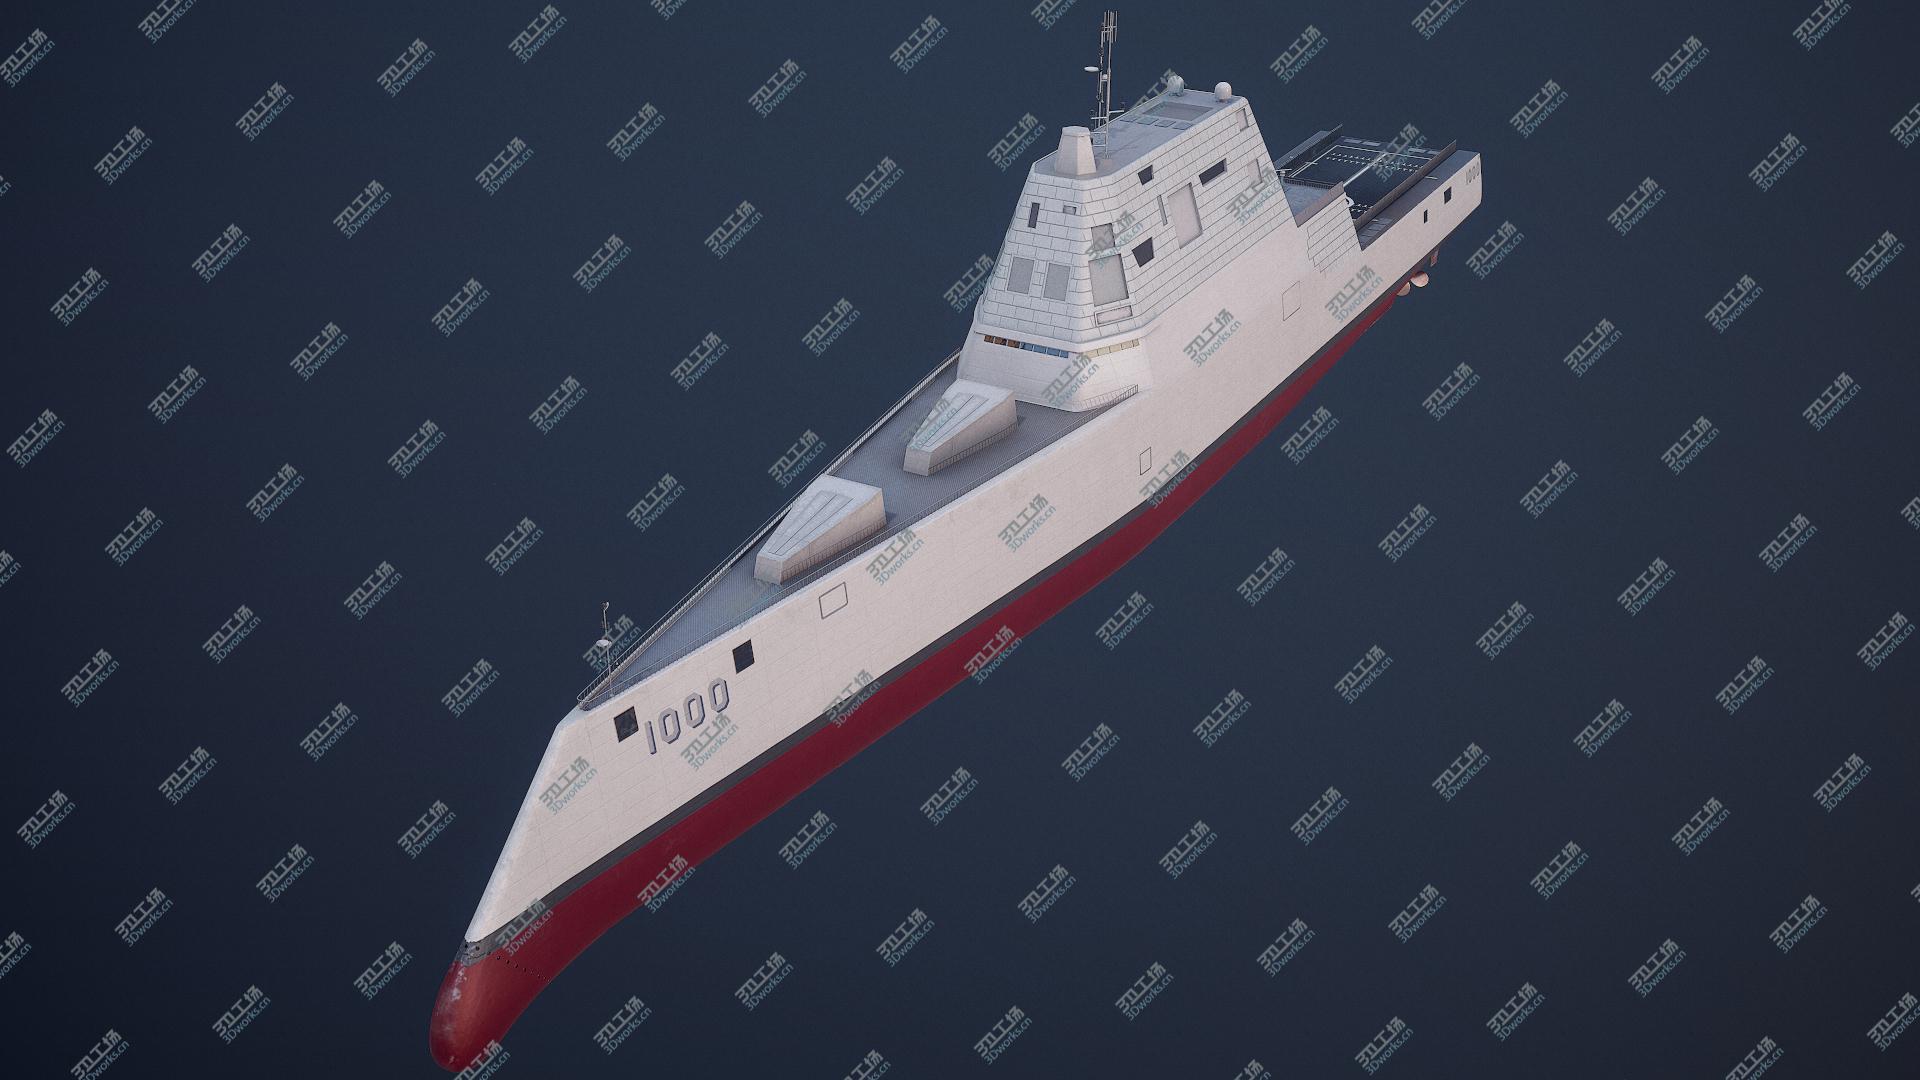 images/goods_img/20210319/Zumwalt Class Destroyer USS DDG-1000 3D model/1.jpg